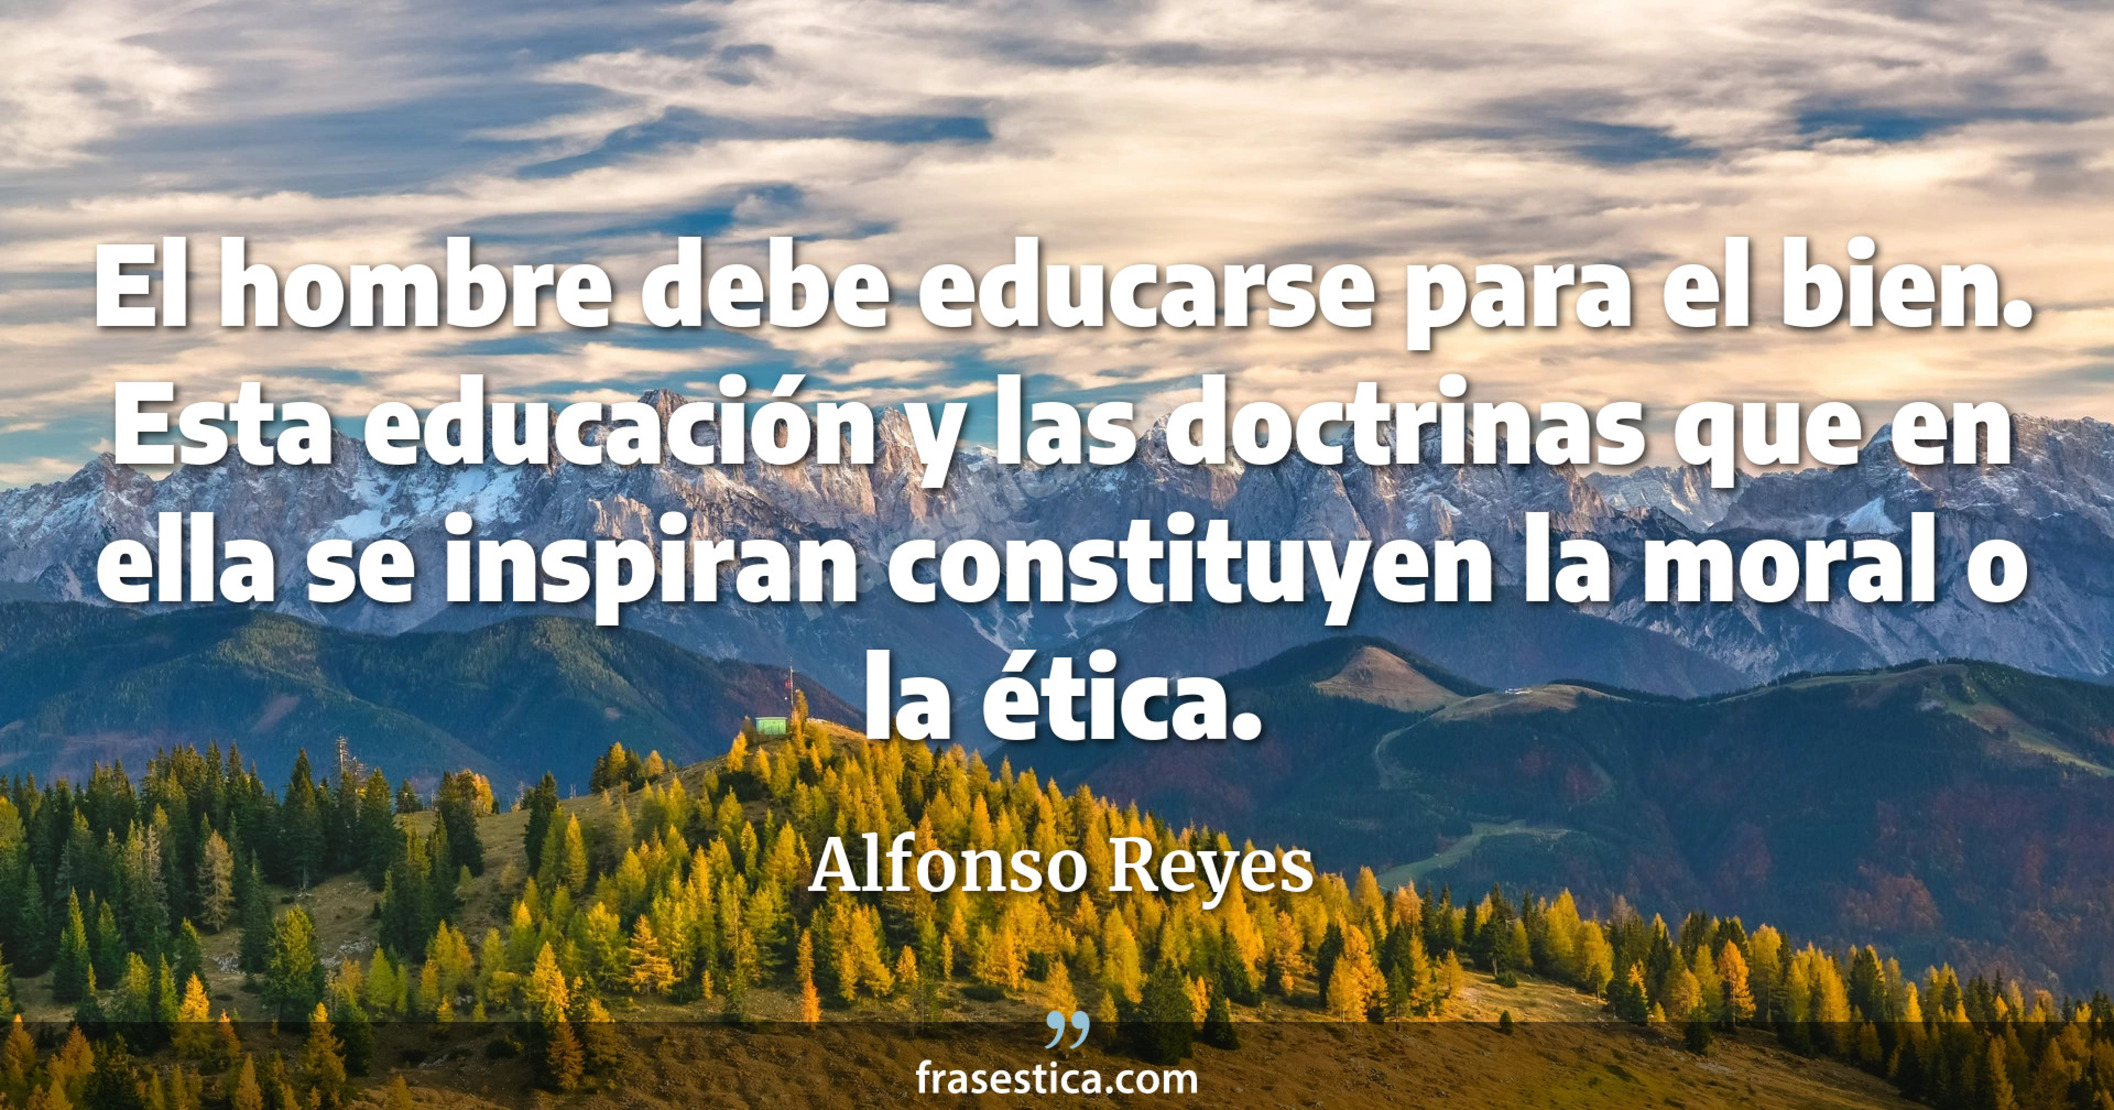 El hombre debe educarse para el bien. Esta educación y las doctrinas que en ella se inspiran constituyen la moral o la ética. - Alfonso Reyes